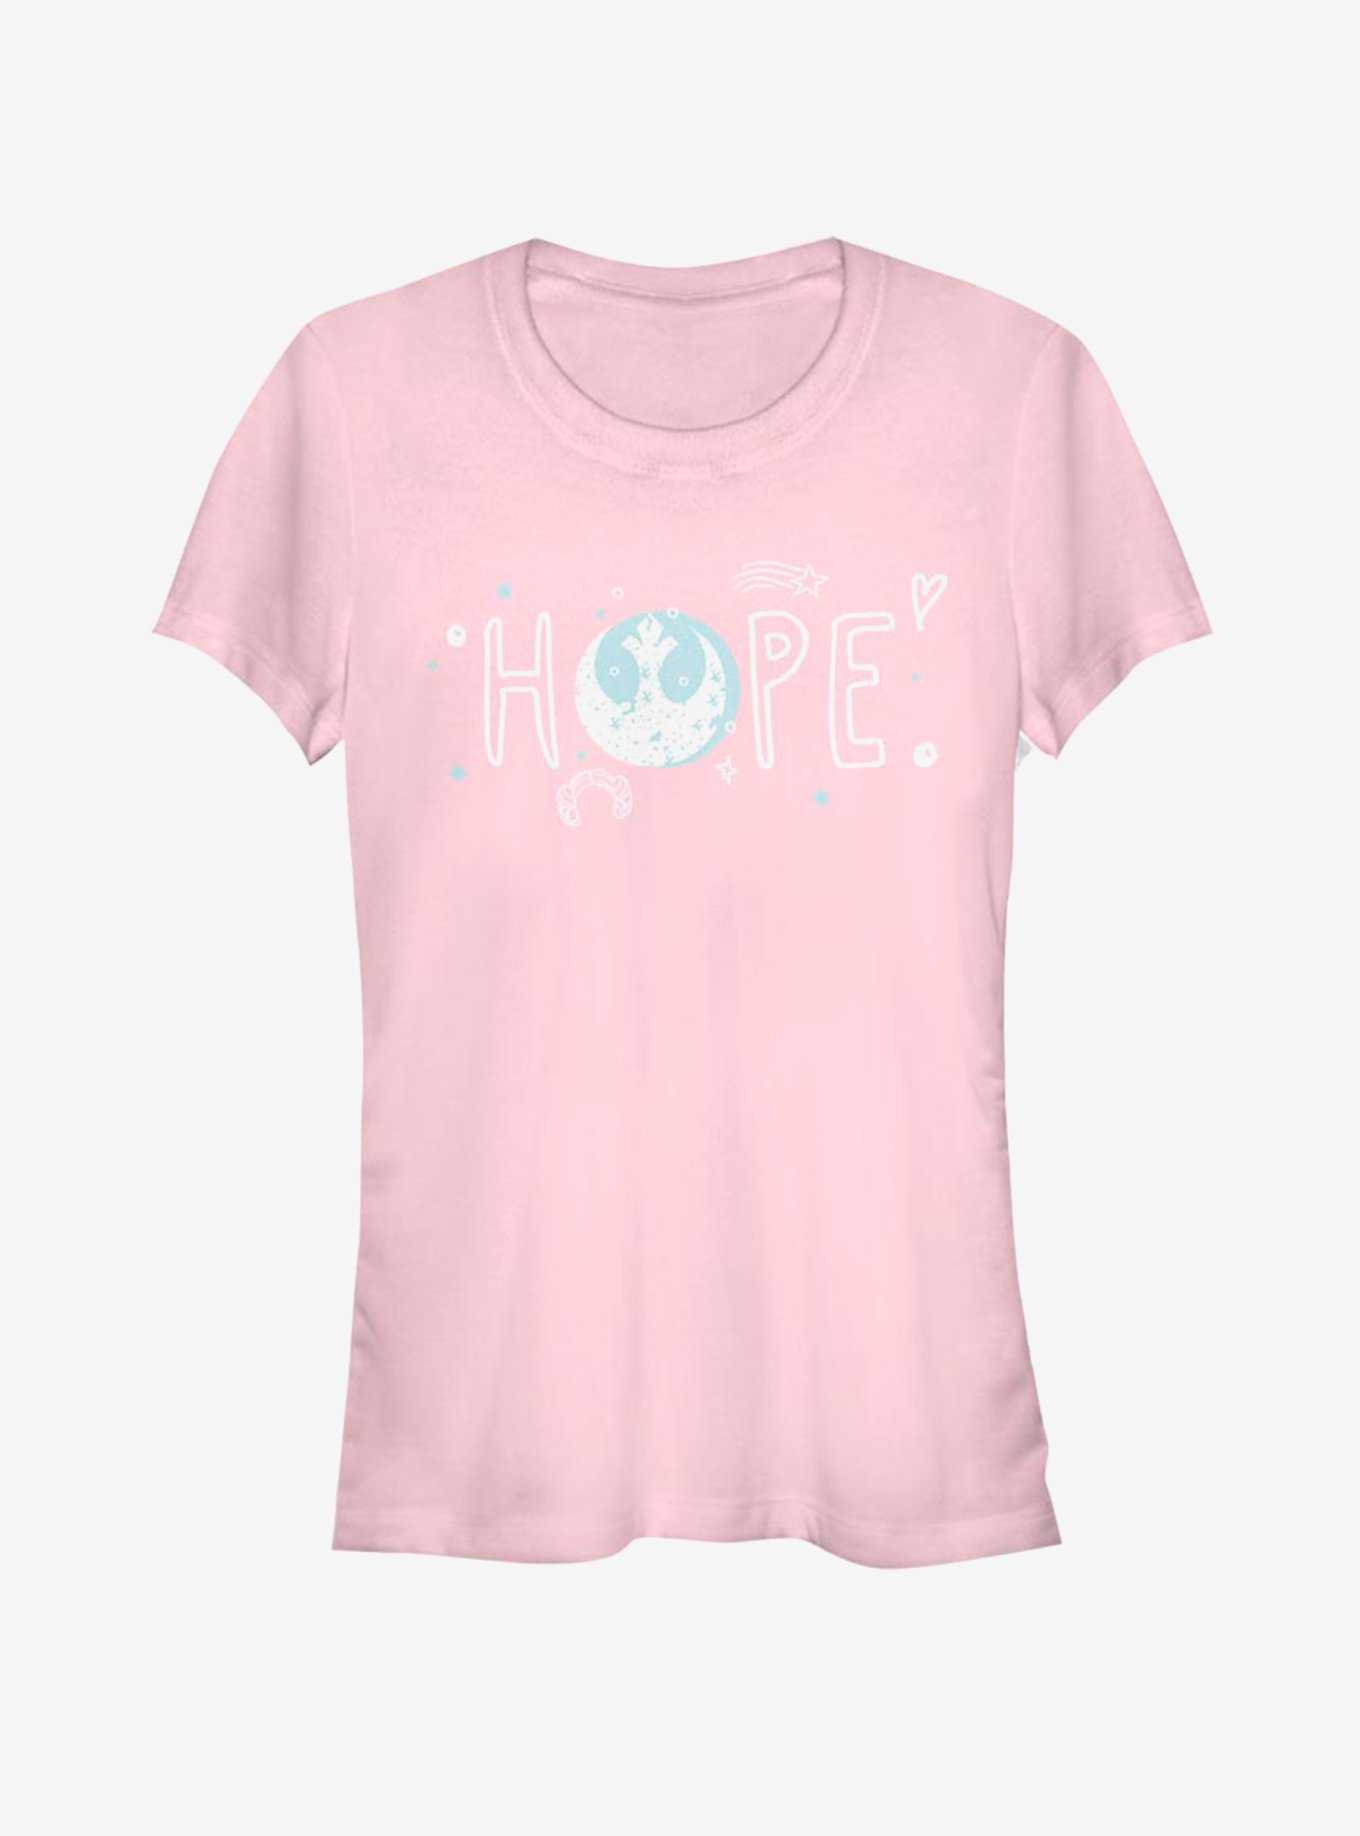 Star Wars Hope Doodles Girls T-Shirt, , hi-res